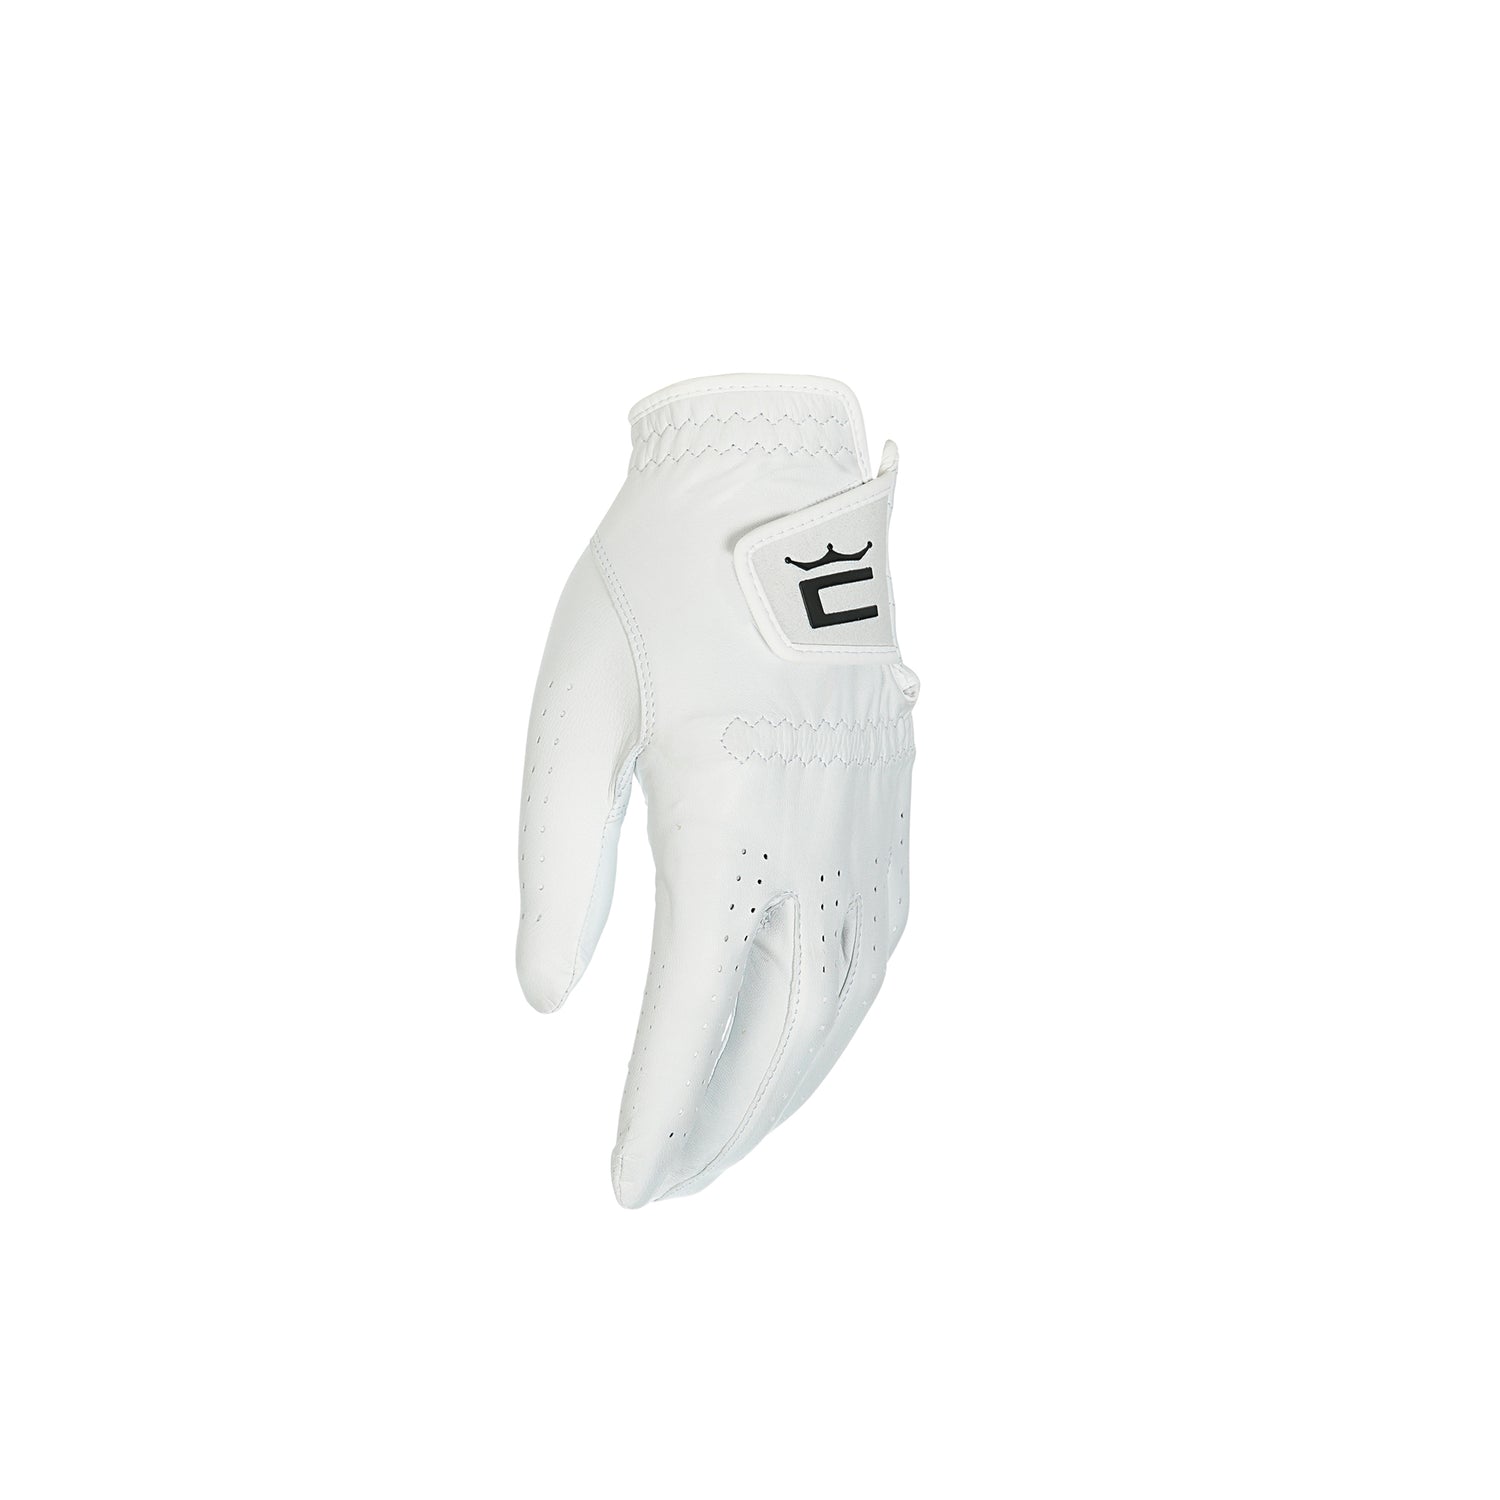 COBRA Accessories - Gloves